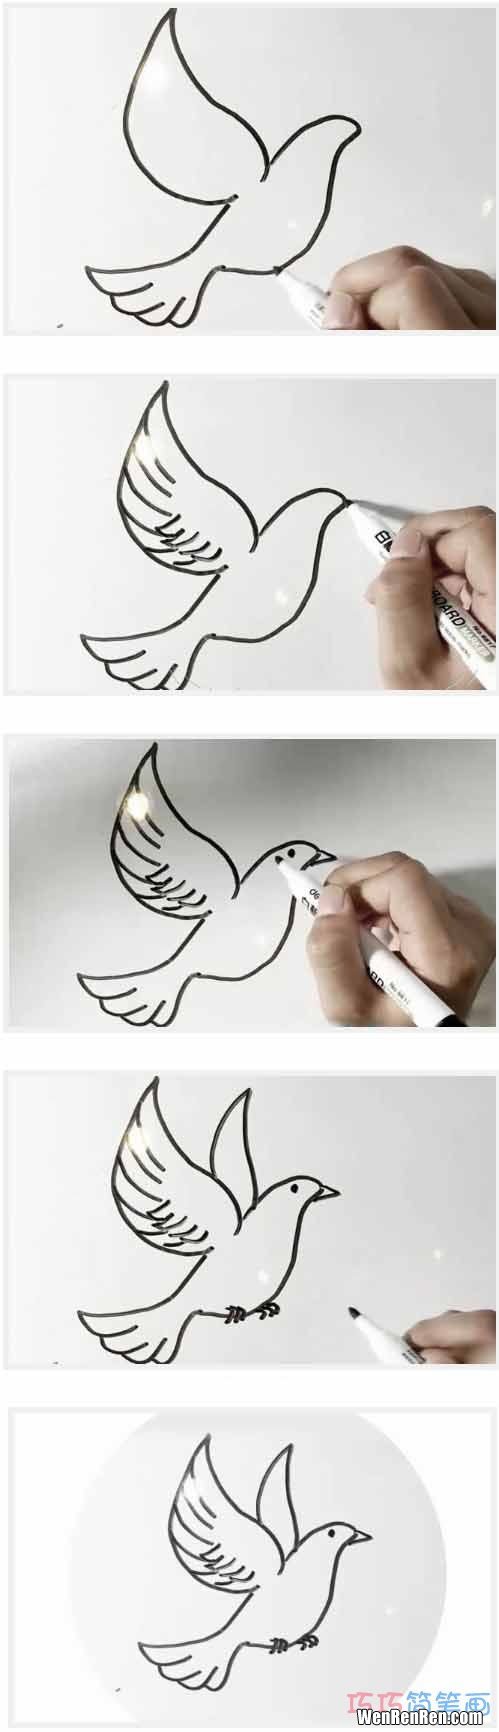 鸽子怎么画,怎样画一只鸽子